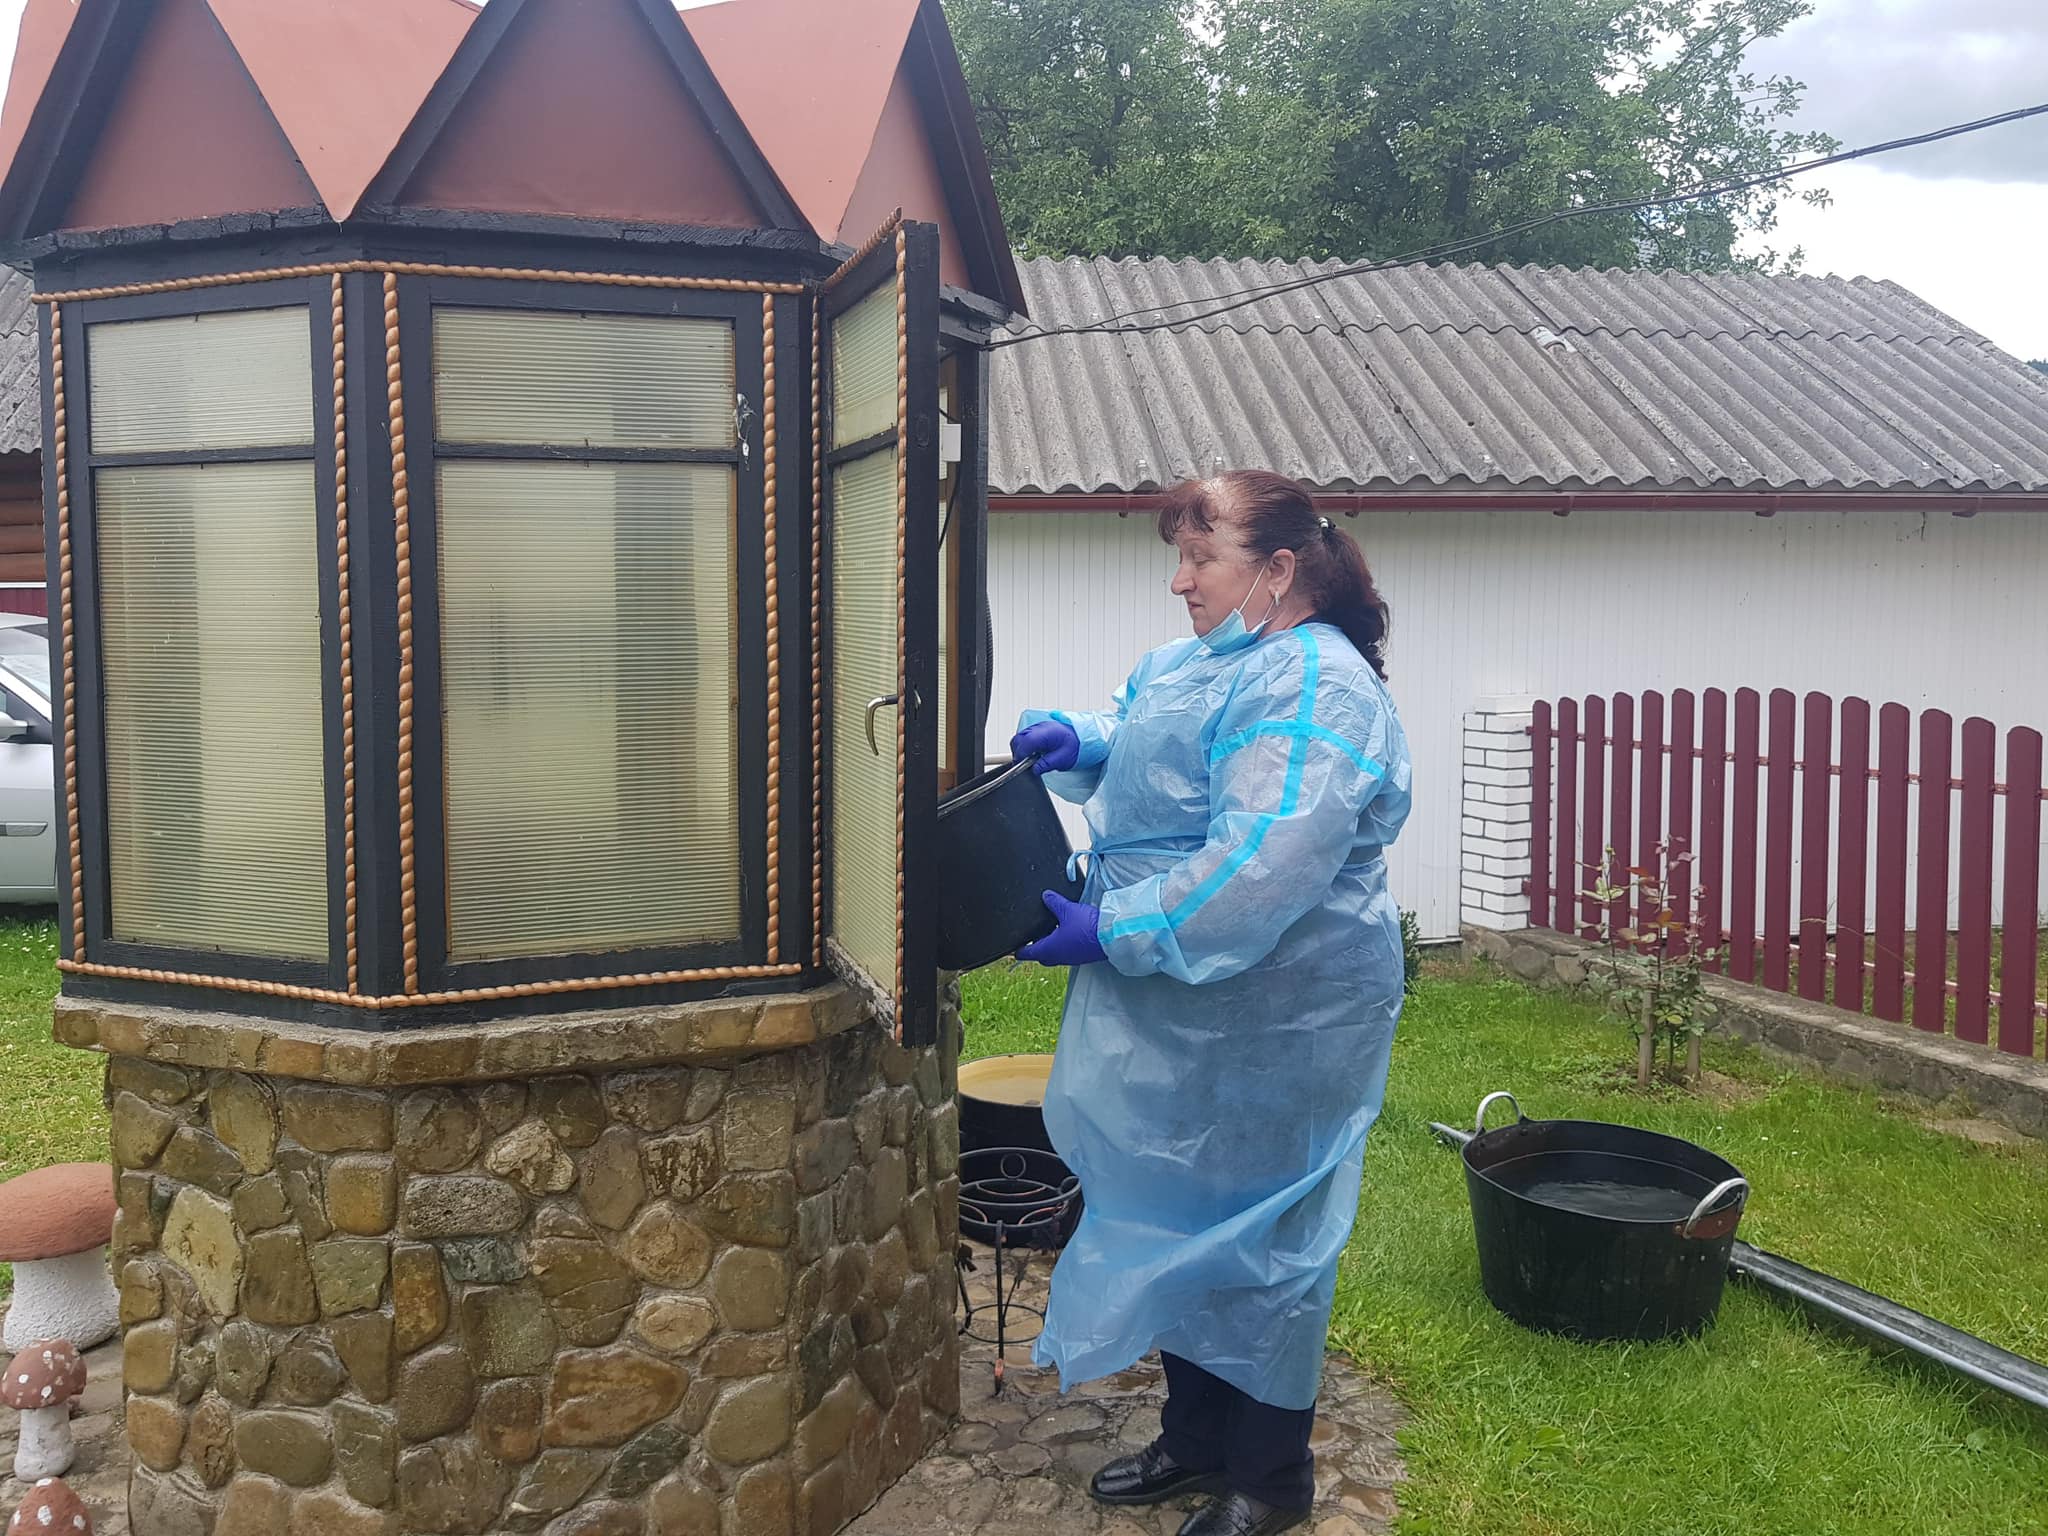 Експерти продовжують дезінфікувати криниці в селі Пороги від гепатиту A, – Савчук